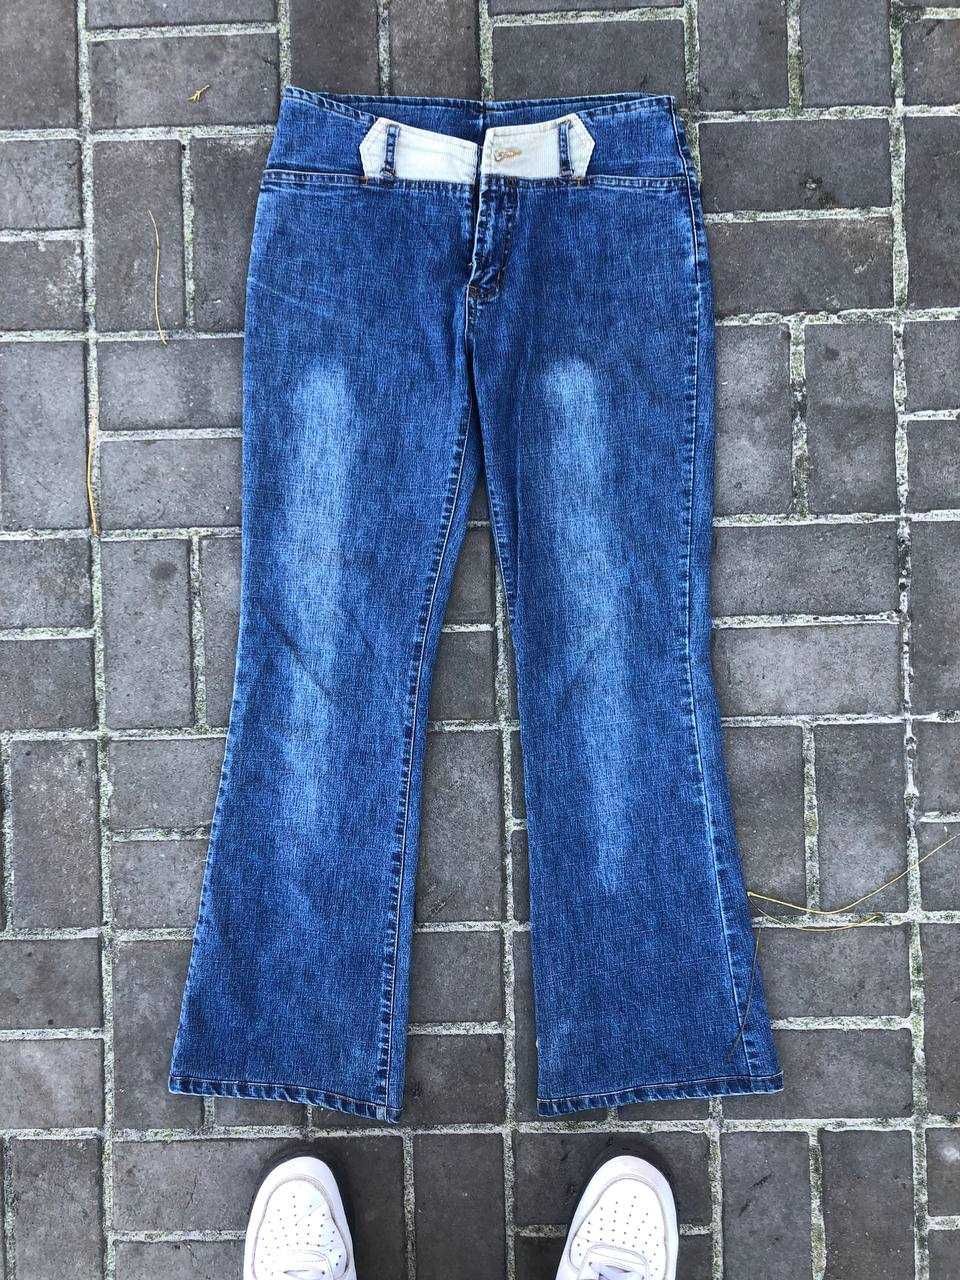 Реп джинсы (Вельветовые вставки)